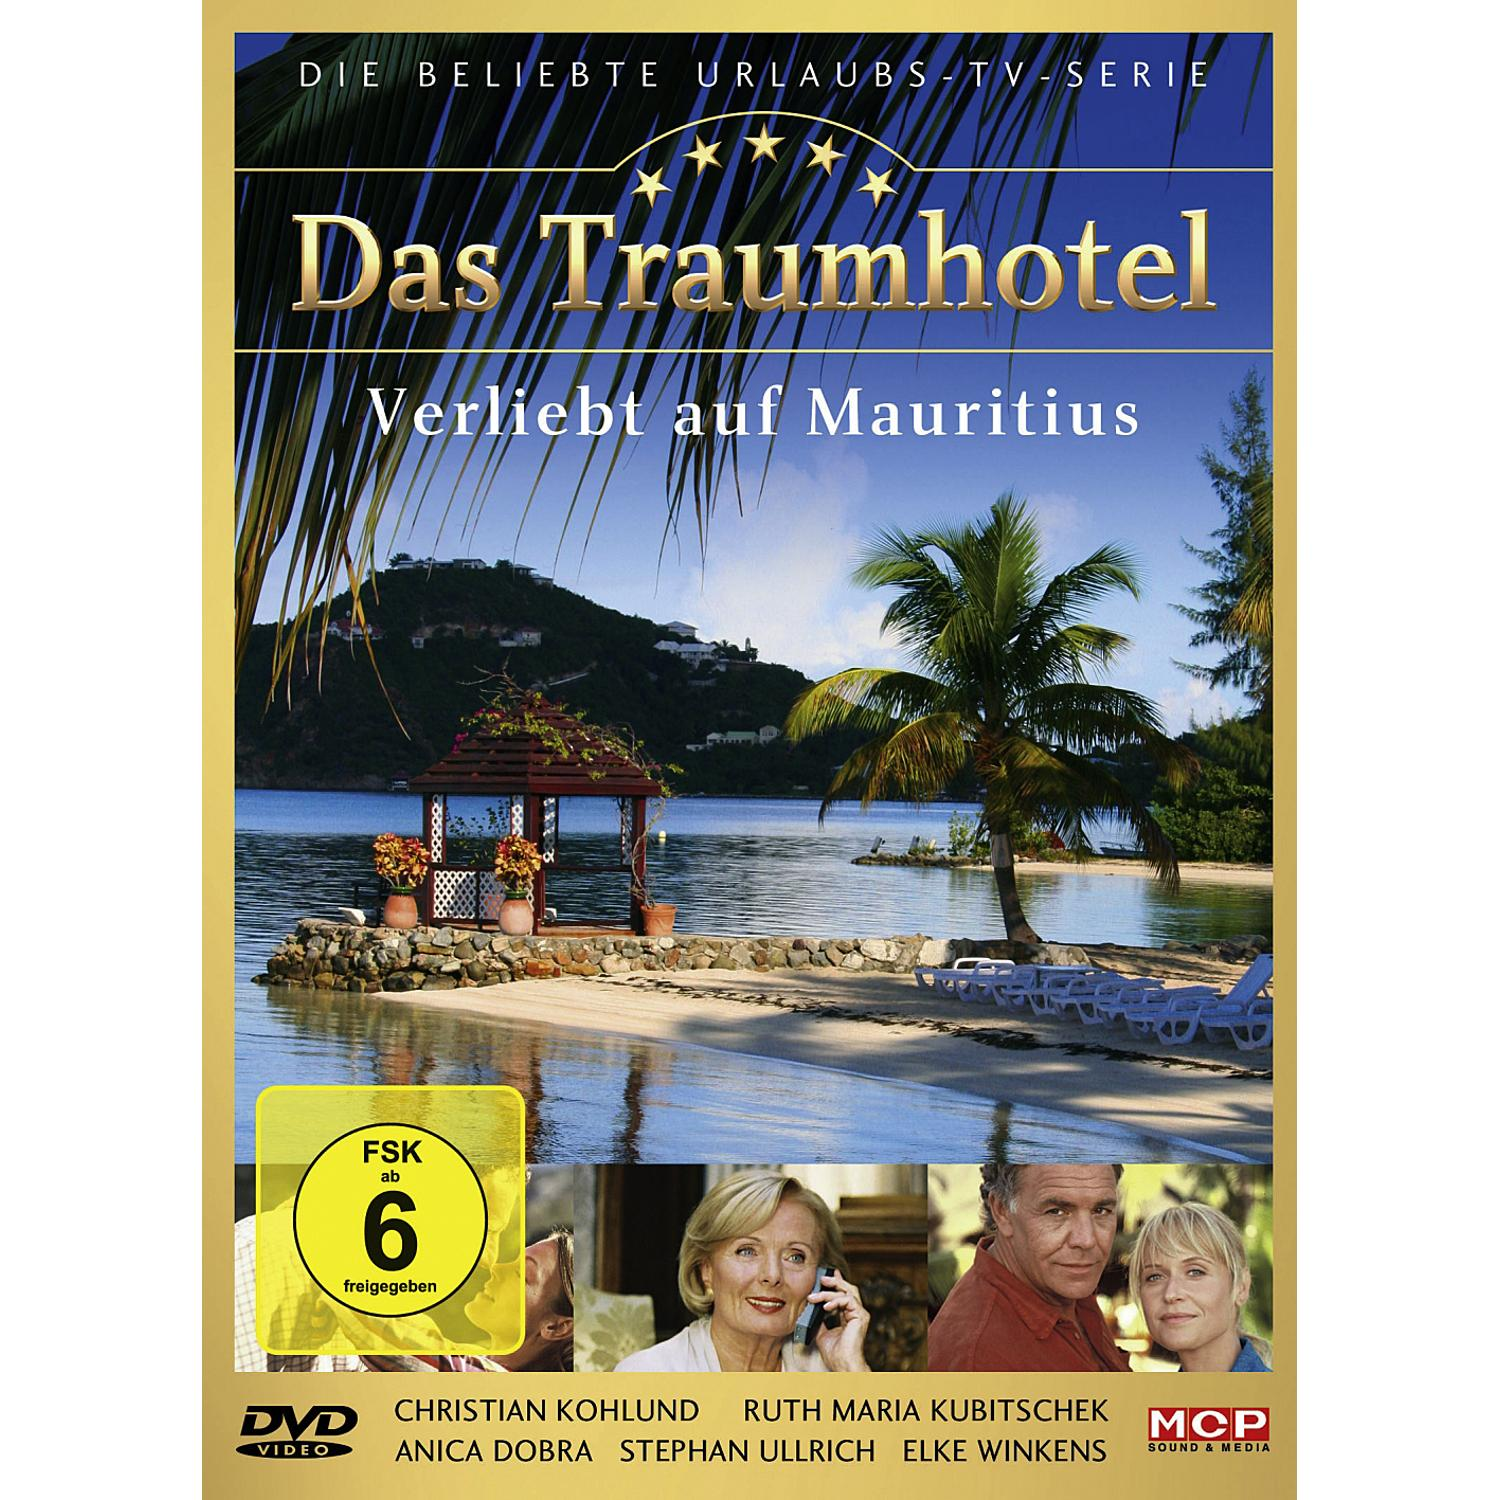 Das Traumhotel: Verliebt auf Mauritius DVD